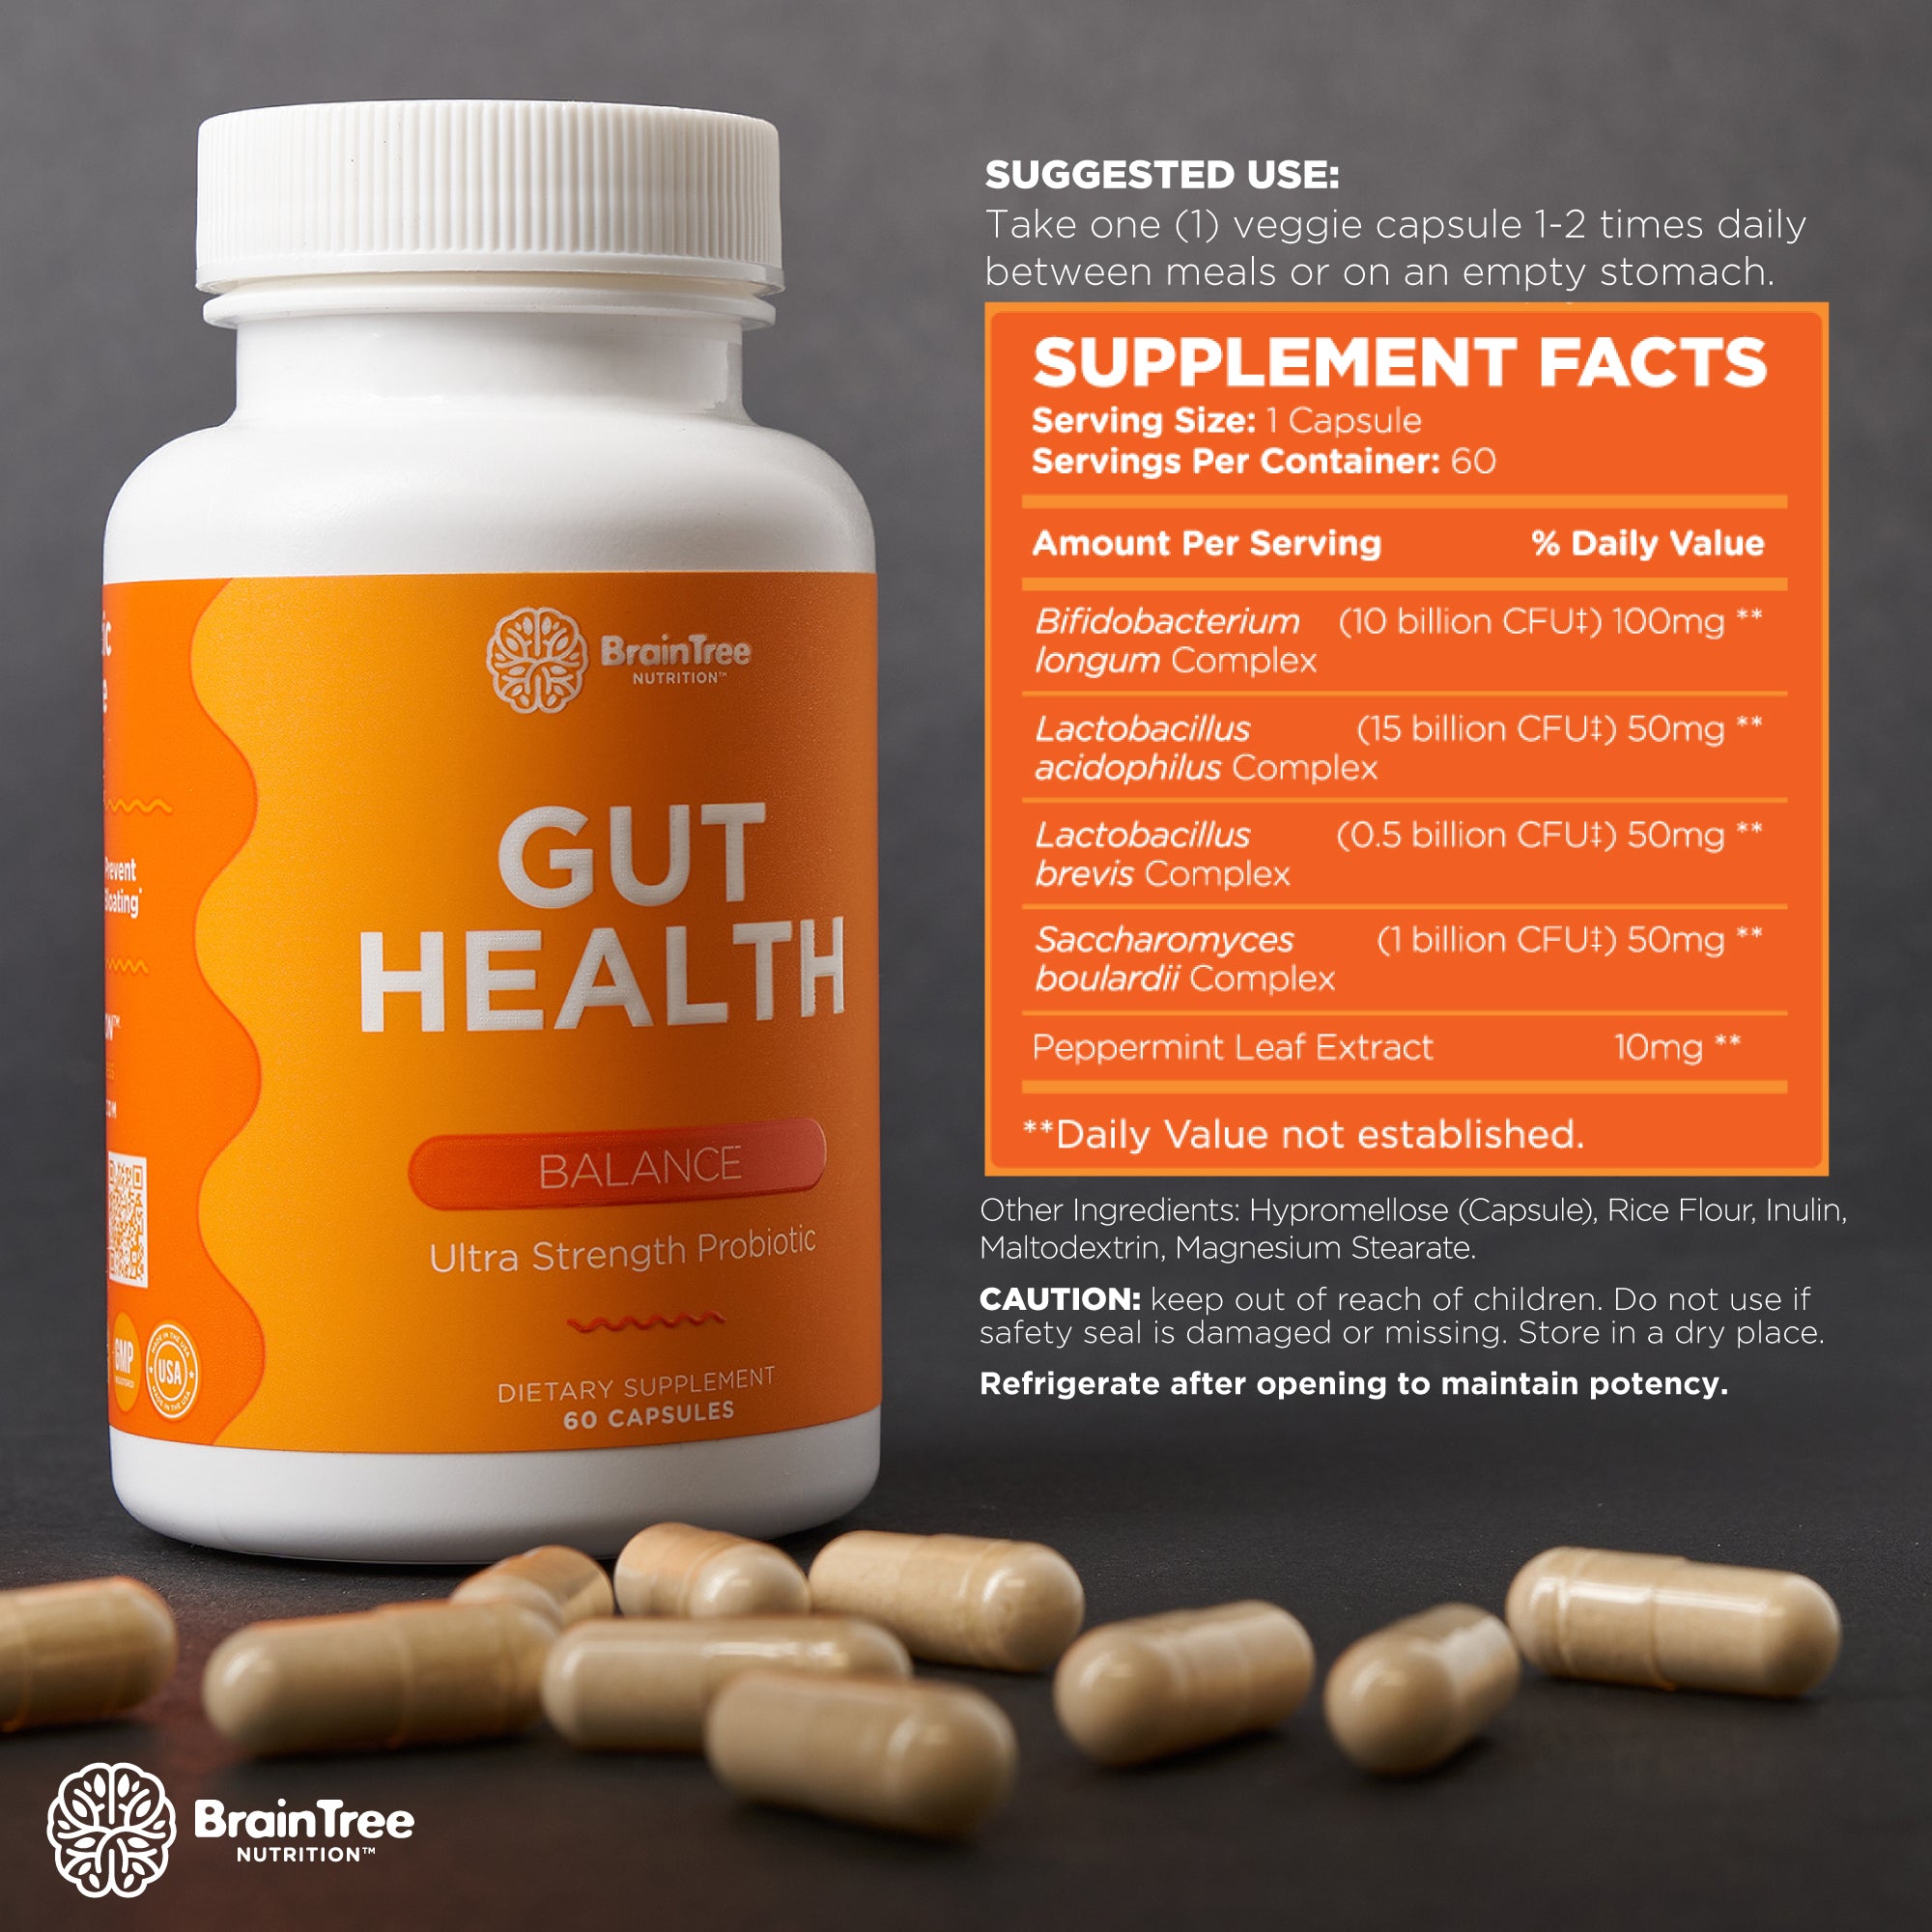 BrainTree Nutrition-Gut Health Supplement